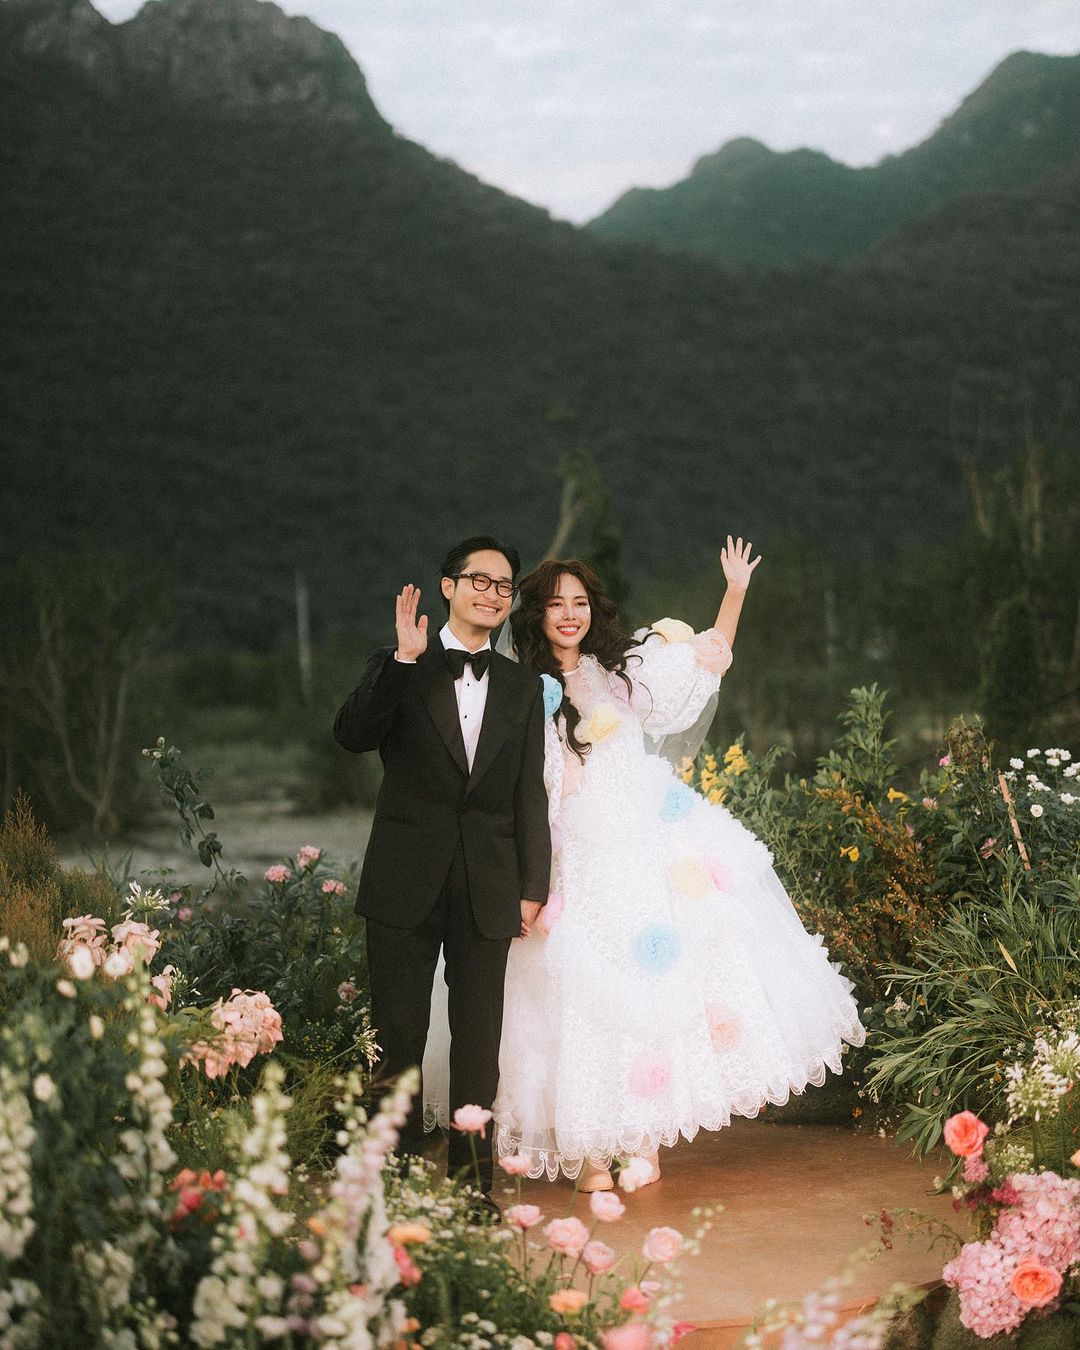 คุณบิว วราภรณ์ & คุณธนิน การ์ดแต่งงาน การ์ดแต่งงานดารา งานแต่ง งานแต่งดารา การ์ดแต่งงานคนดัง การ์ดแต่งงานบิววราภรณ์